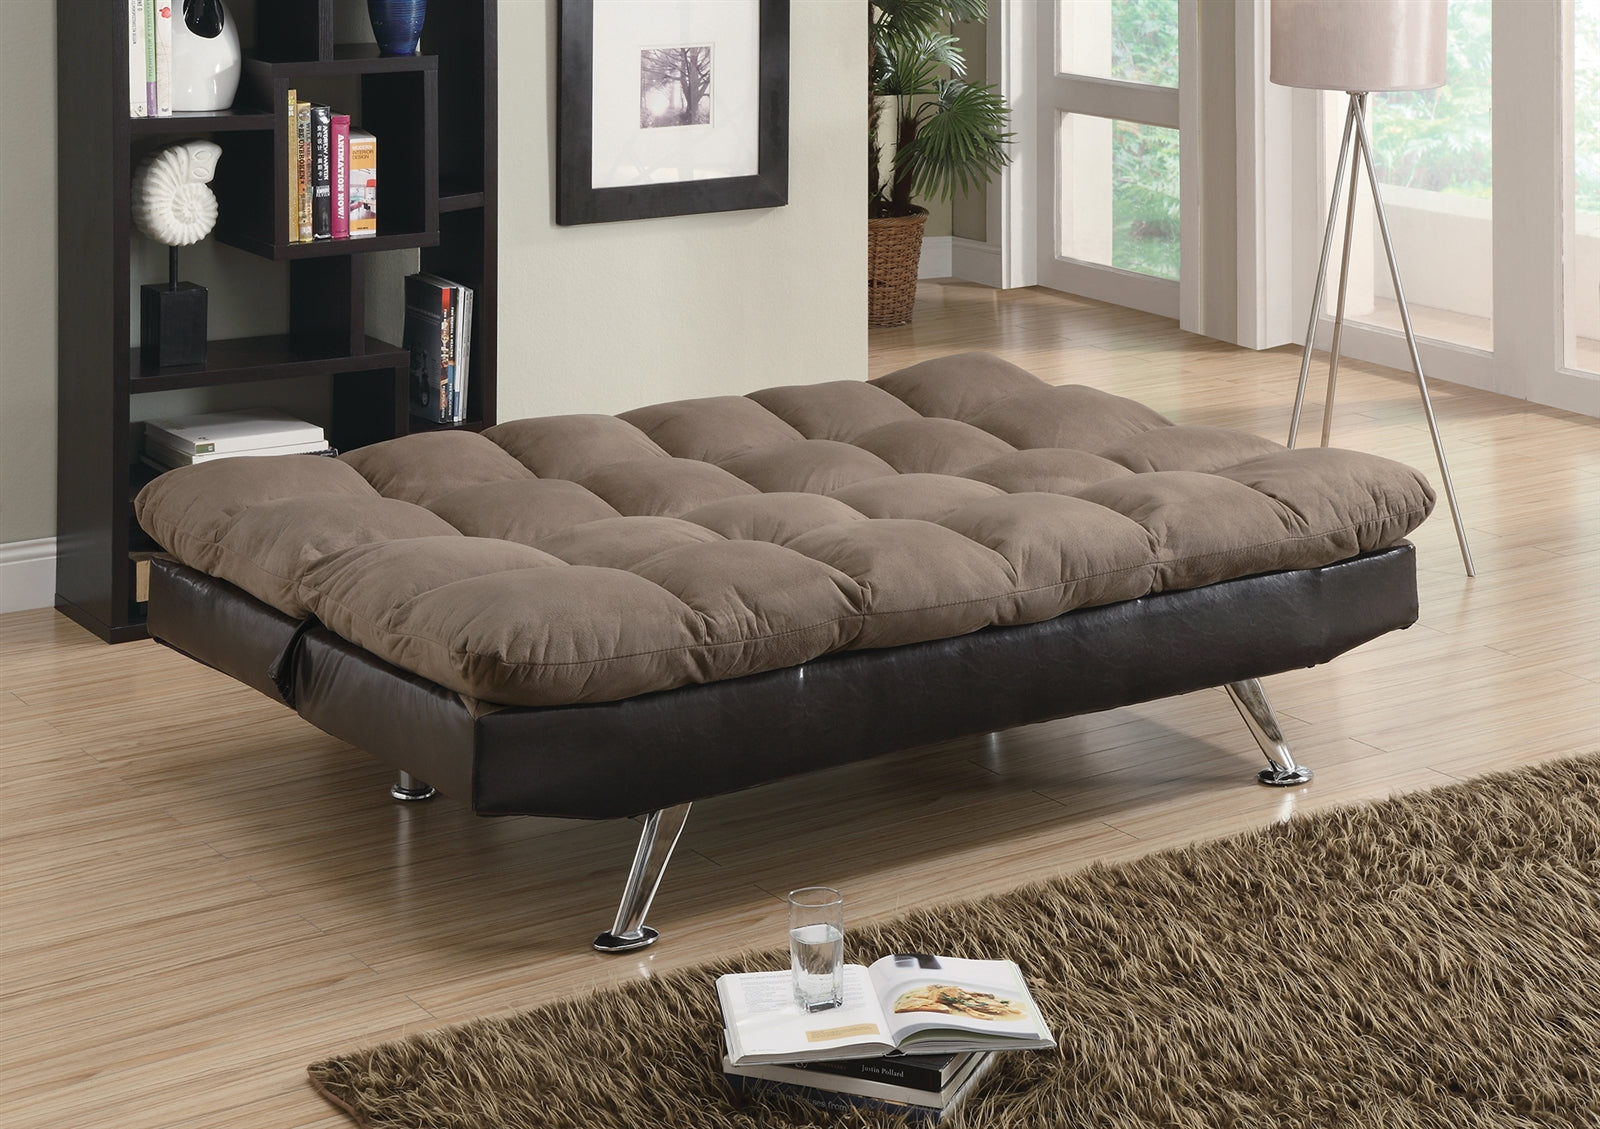 Saga 2-Tone Brown Microfiber Sofa Bed